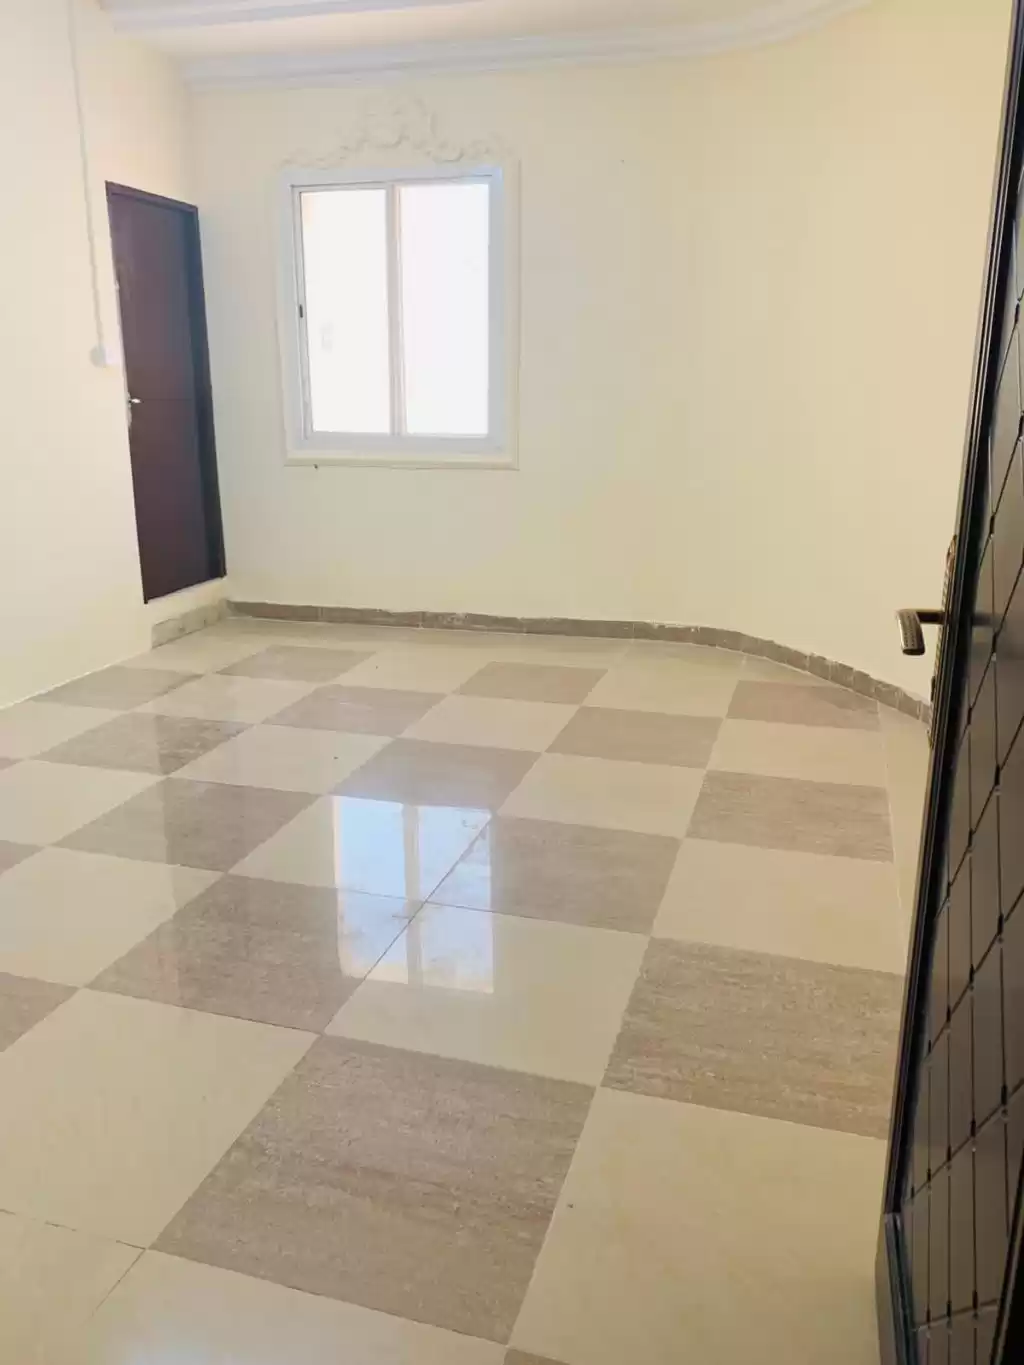 Résidentiel Propriété prête 1 chambre U / f Appartement  a louer au Al-Sadd , Doha #13275 - 1  image 